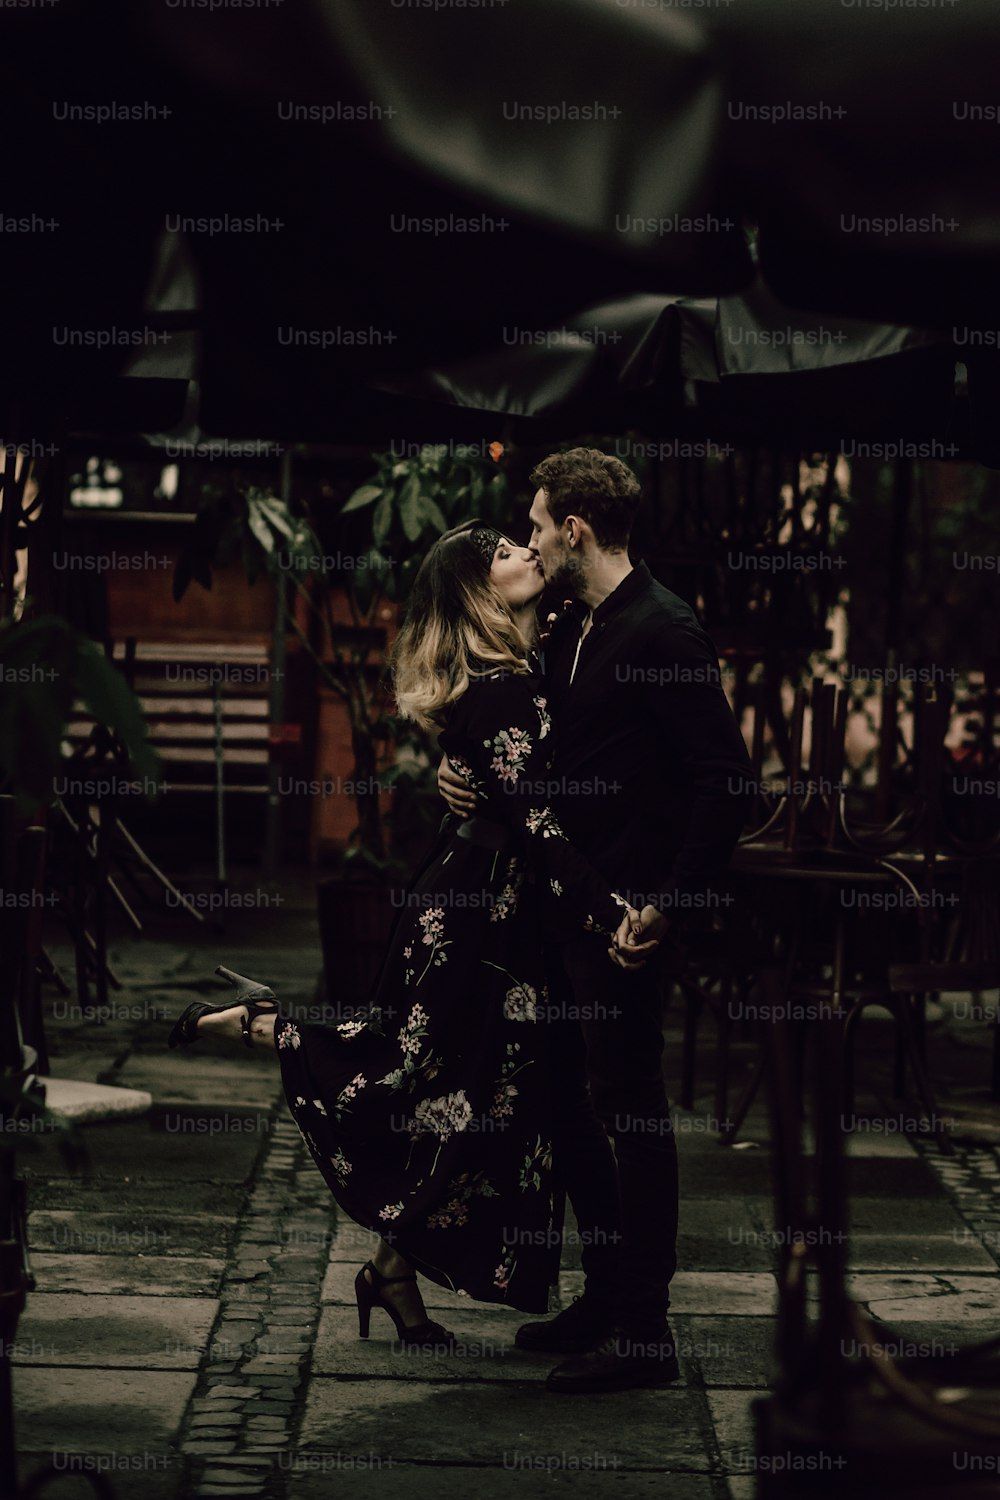  Umarmung Hintergrundbild 1000x1500. Foto zum Thema Glückliches Paar, das sich draußen in der Nähe von Regenschirmen in einem Restaurant in Paris küsst, stilvoller Freund und Freundin umarmen sich im Urlaub, Leidenschaftskonzept